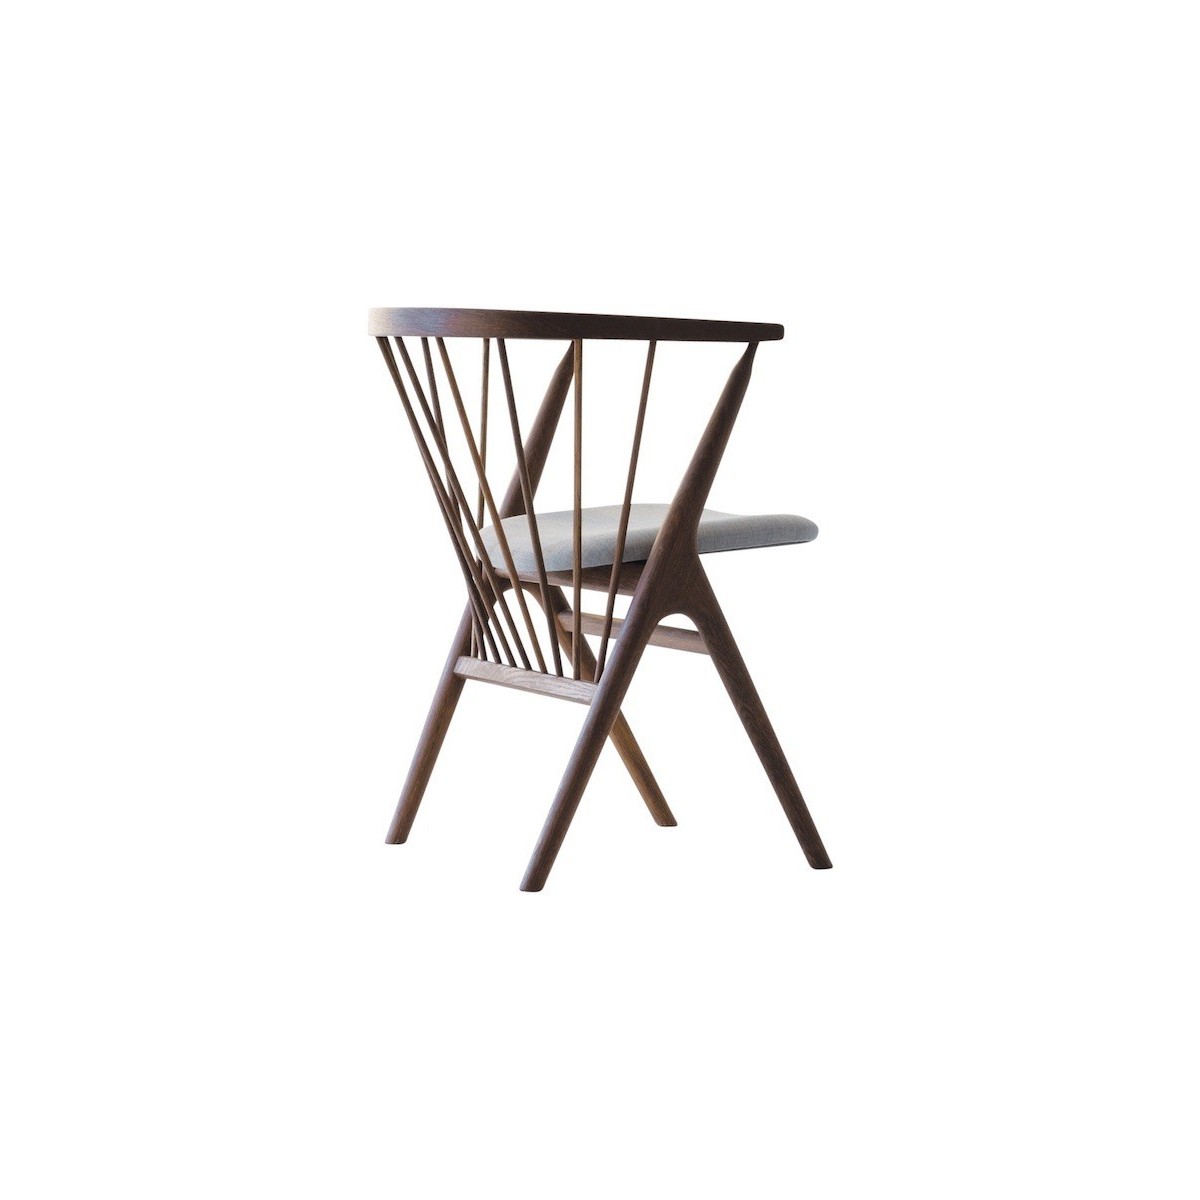 Remix 123 + smoked oak - Sibast 8 chair